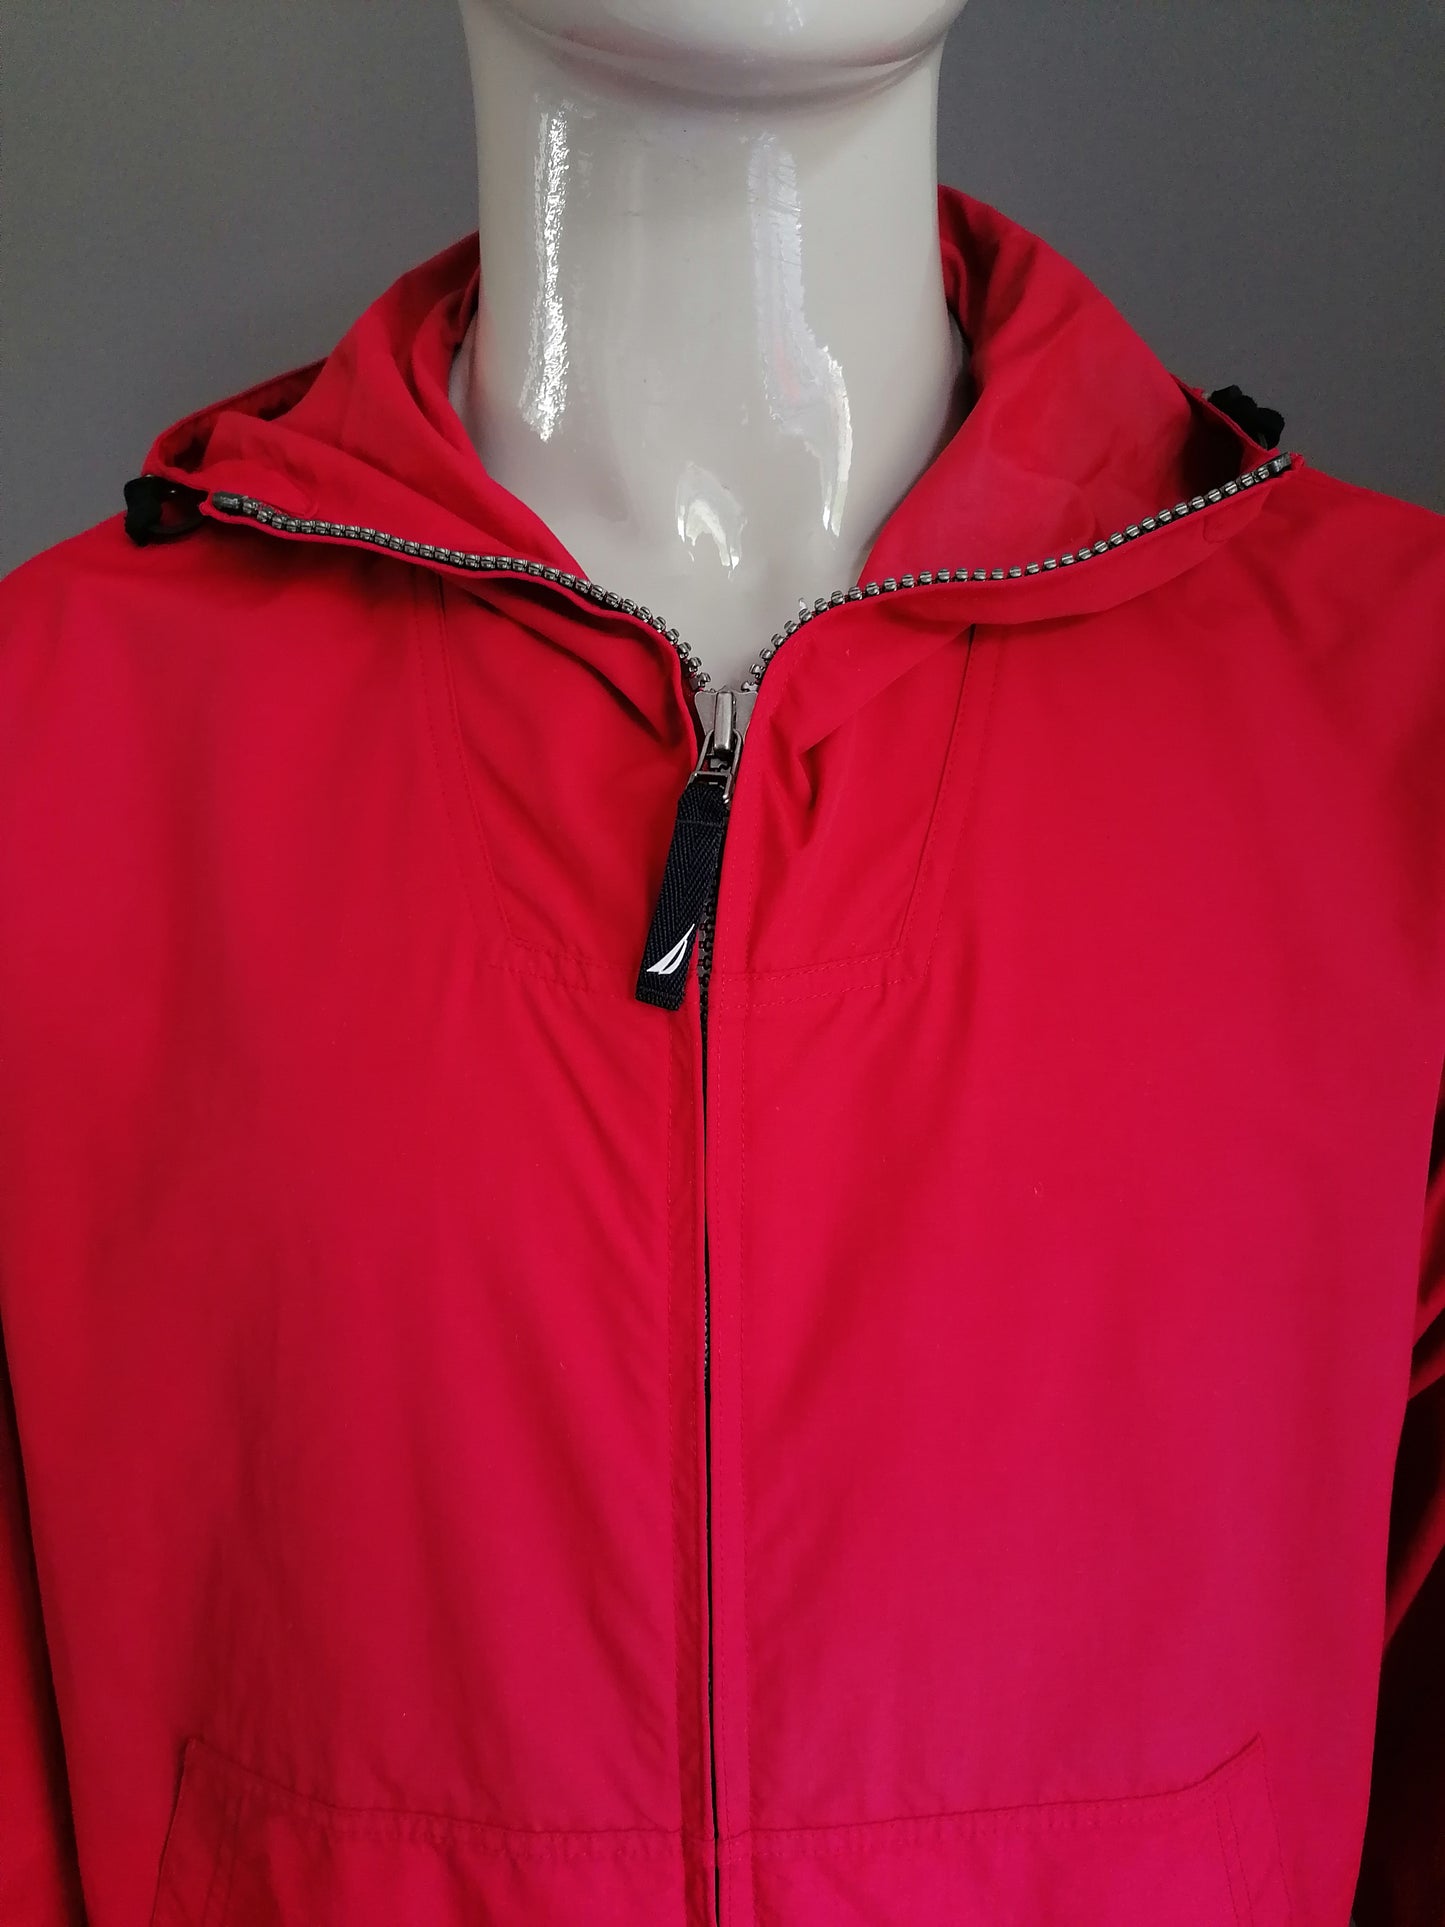 Nylon Nautica Boy Scout vintage Jack/giacca estiva. Rosso colorato. Dimensione M / L.